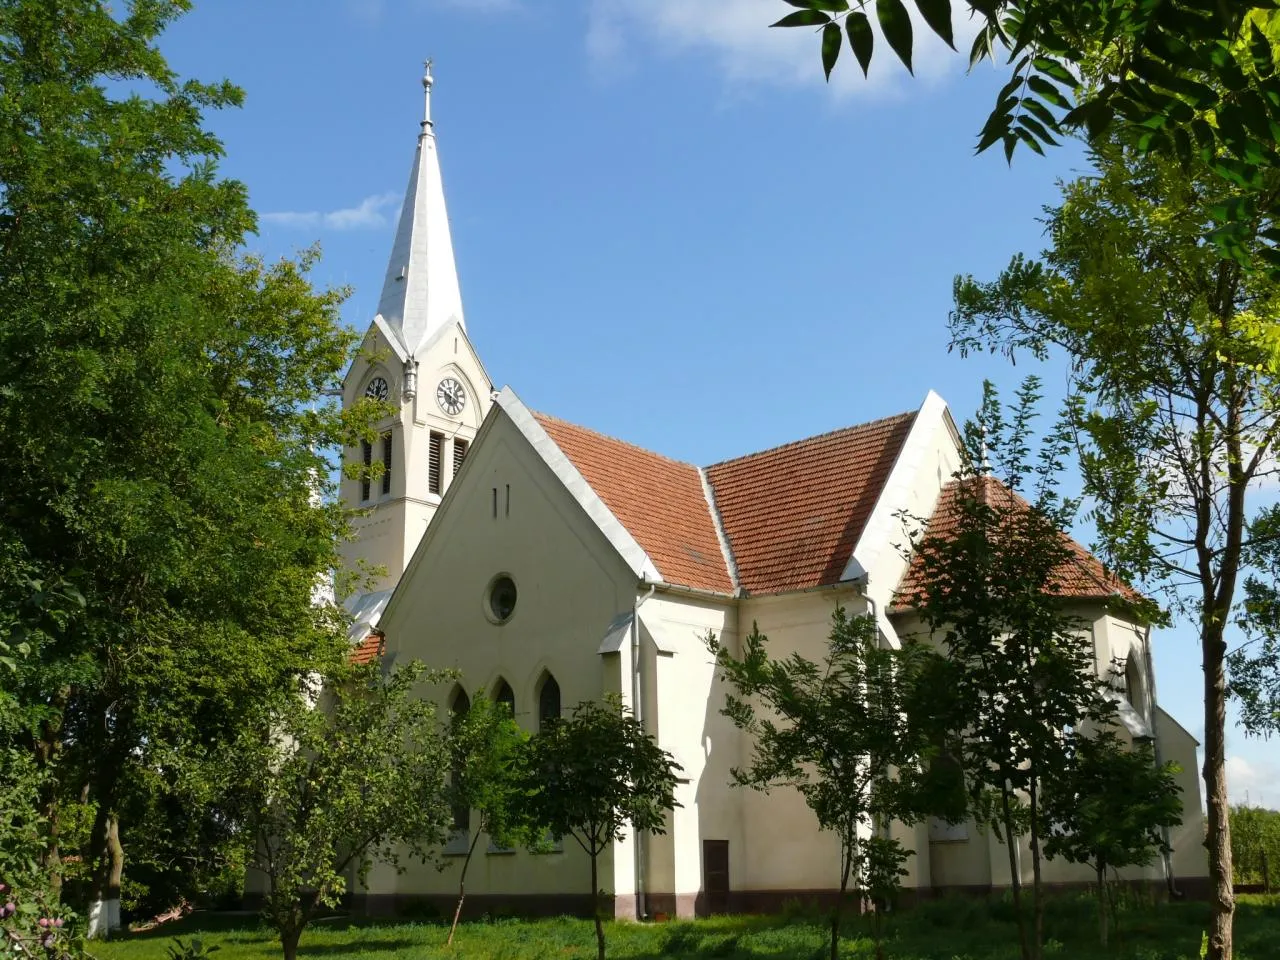 Photo showing: A nagysármási református templom 1901-1902 között épült Czigler Győző műgyetemi tanár tervei alapján